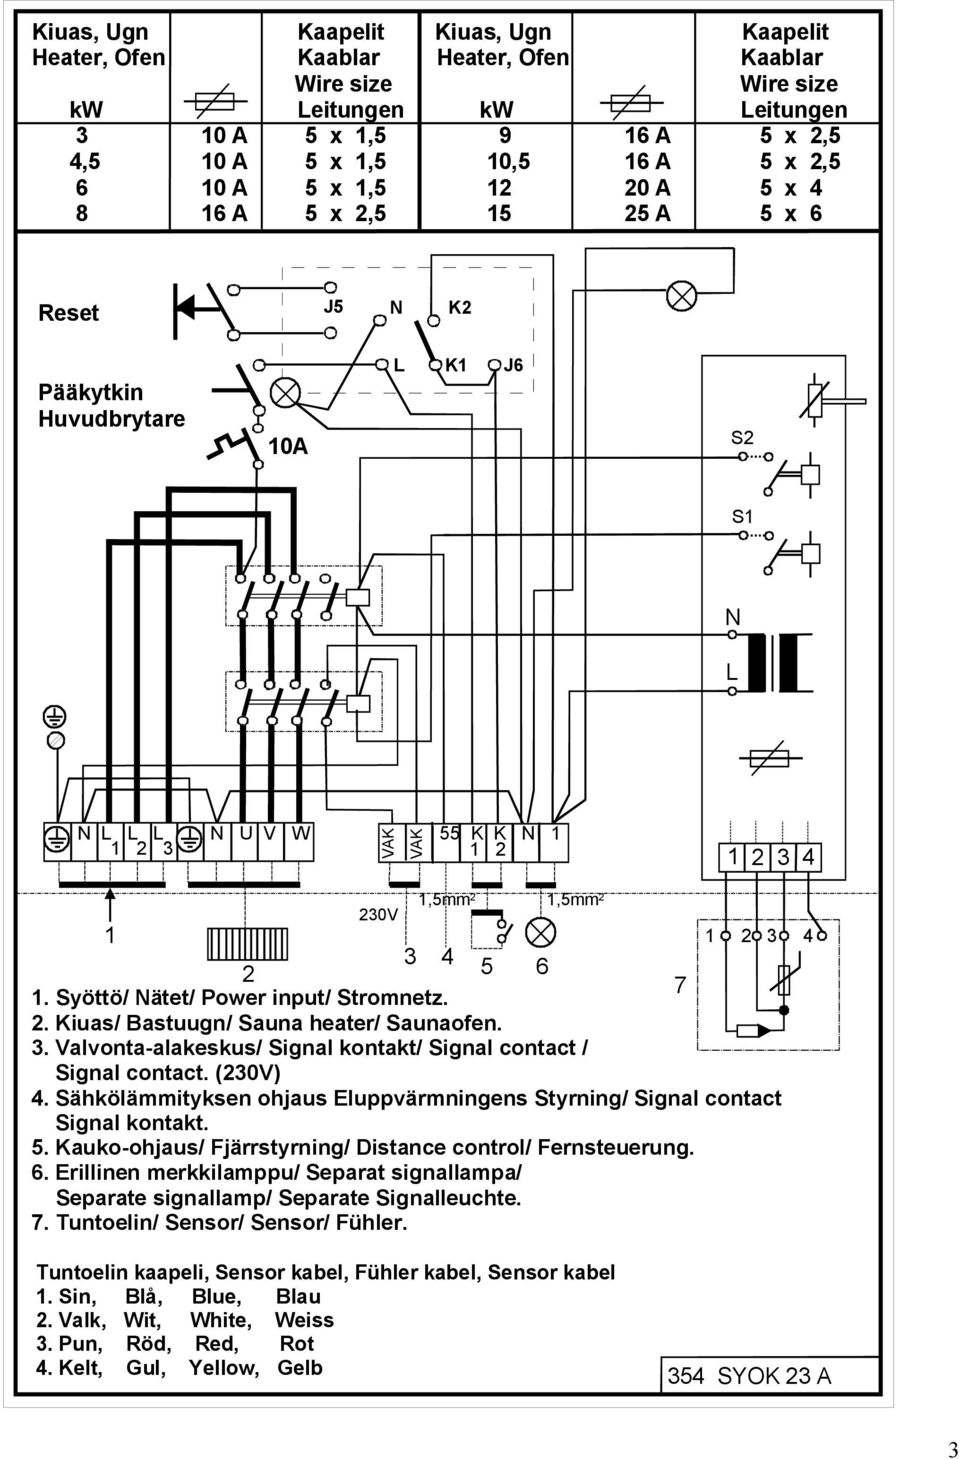 Syöttö/ Nätet/ Power input/ Stromnetz. 2. Kiuas/ Bastuugn/ Sauna heater/ Saunaofen. 3. Valvonta-alakeskus/ Signal kontakt/ Signal contact / Signal contact. (230V) 4.